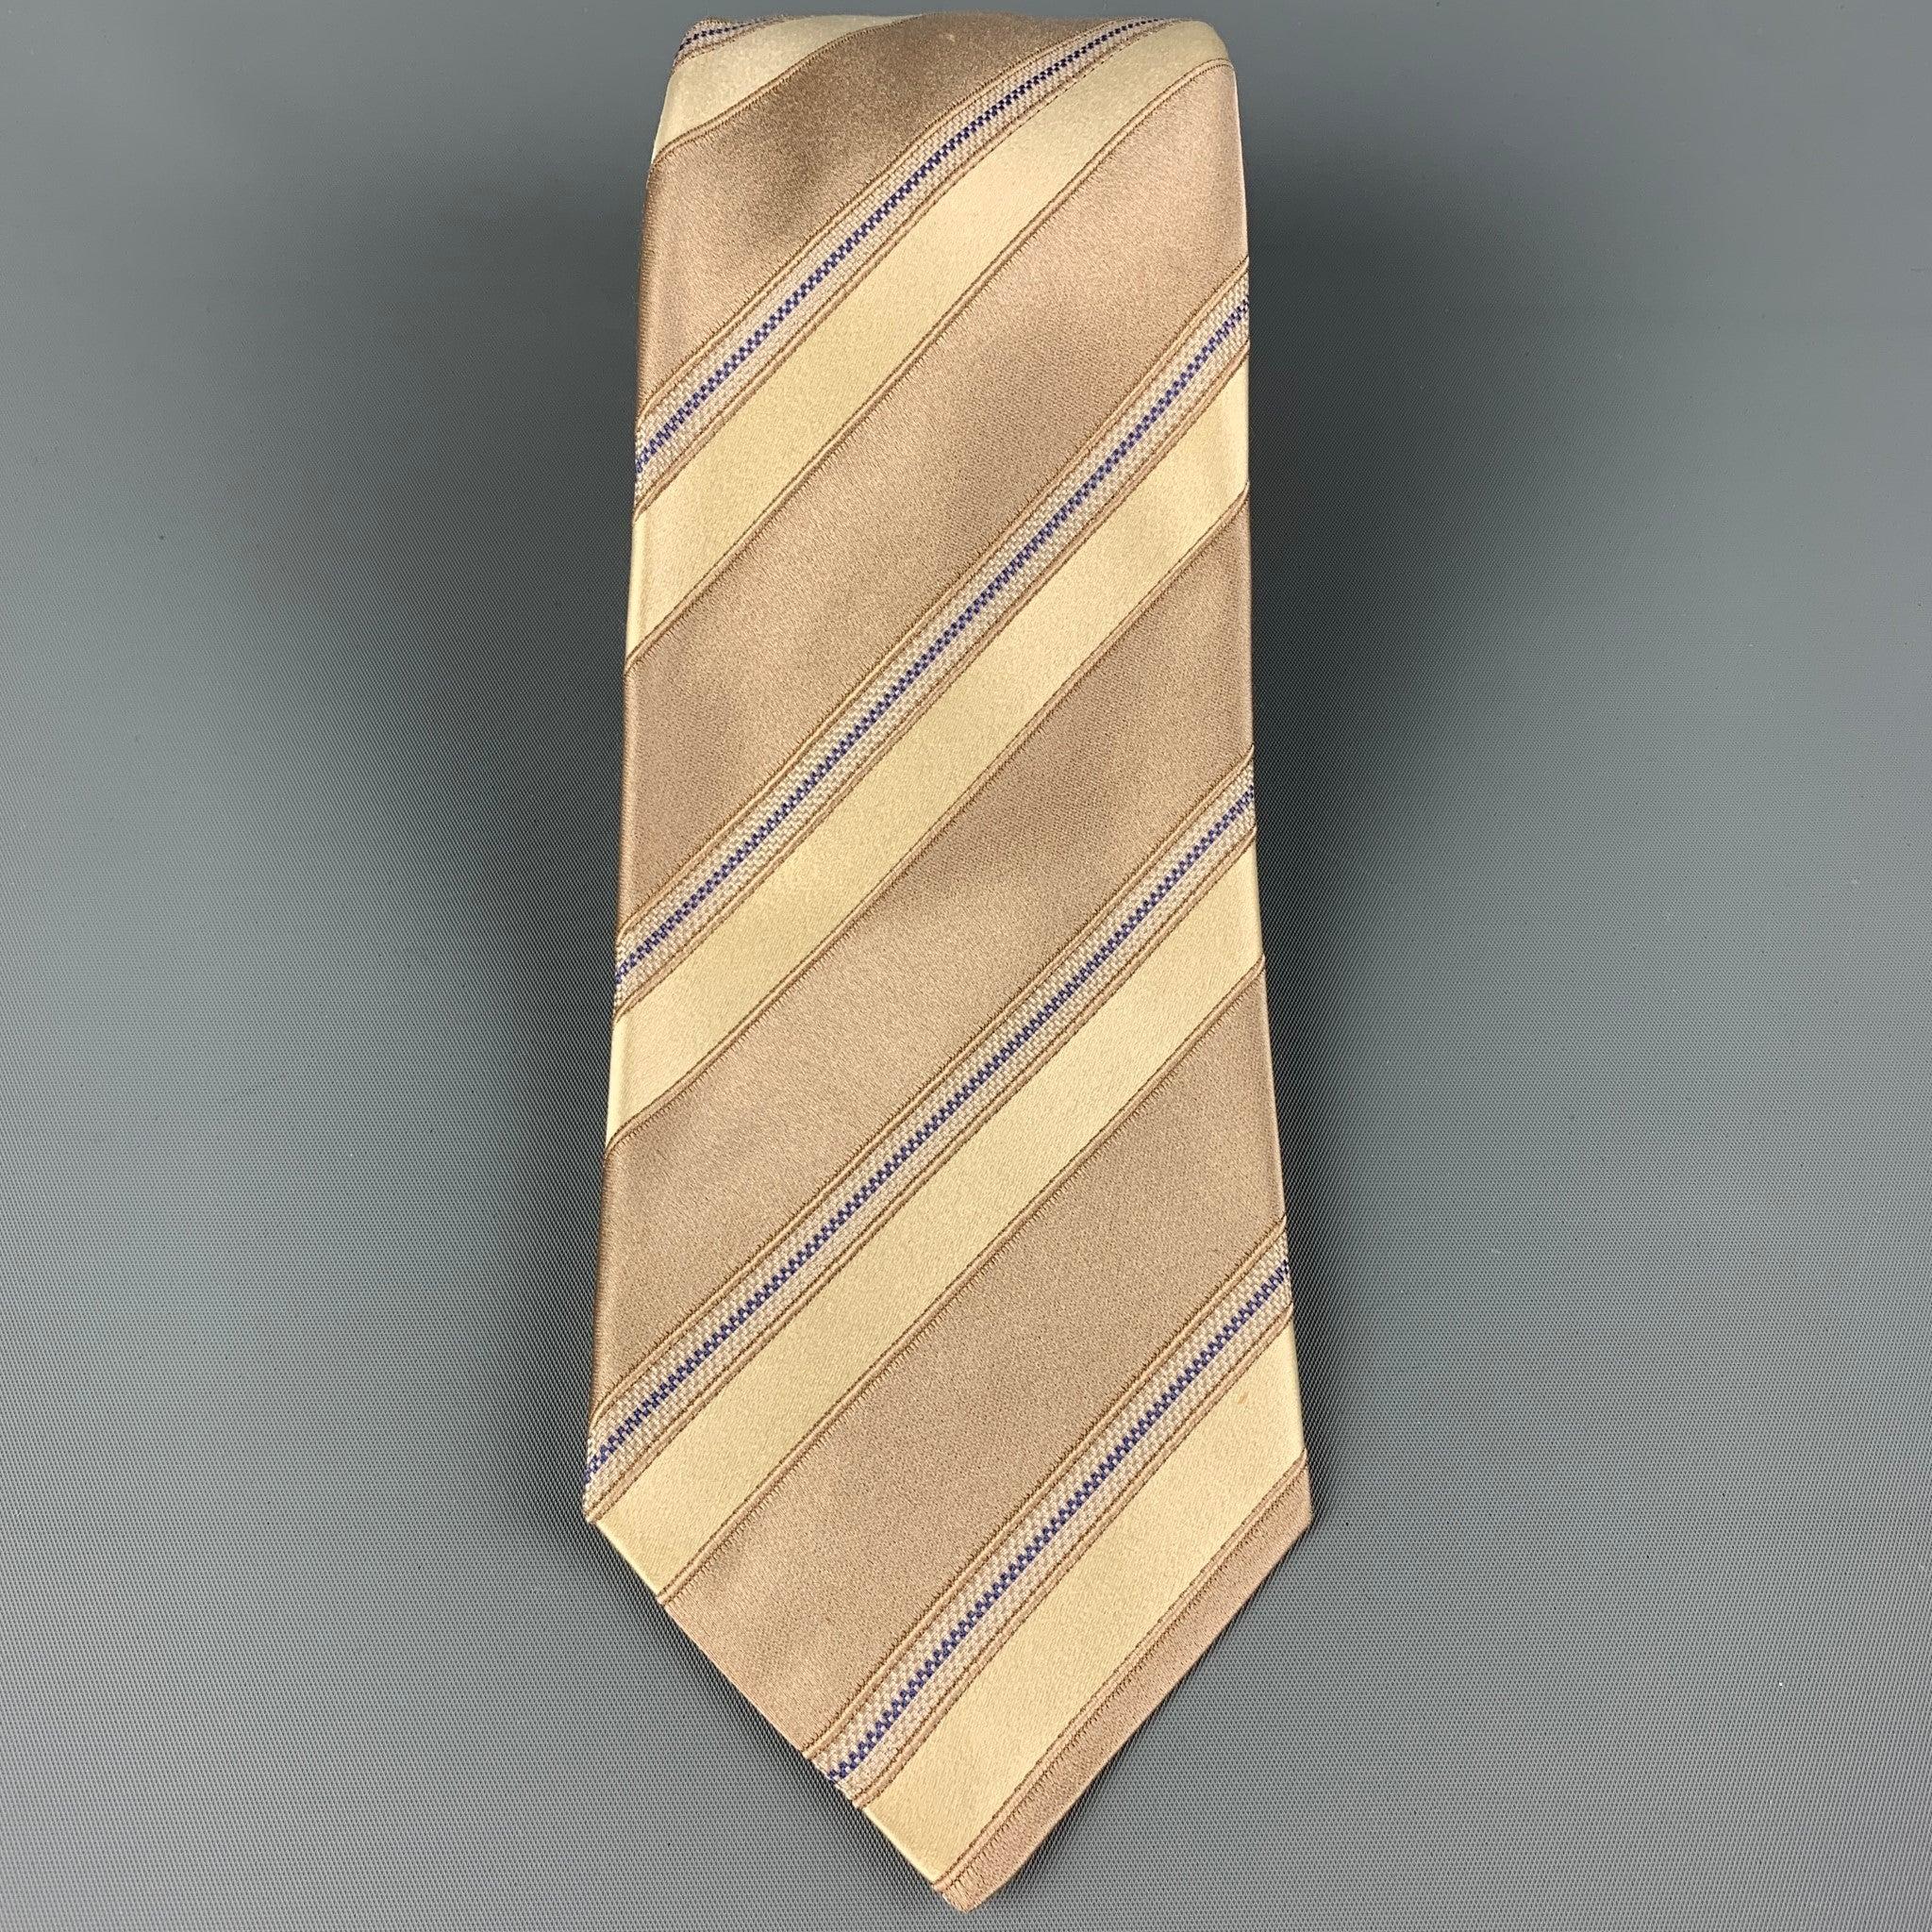 La cravate KITON est en soie taupe et jaune à rayures diagonales. Fabriqué en Italie. Très bon état d'usage.largeur : 3.75 pouces  Longueur : 62 pouces 


  
  
 
Référence Sui Generis : 120386
Catégorie : Cravate
Plus de détails
    
Marque : 